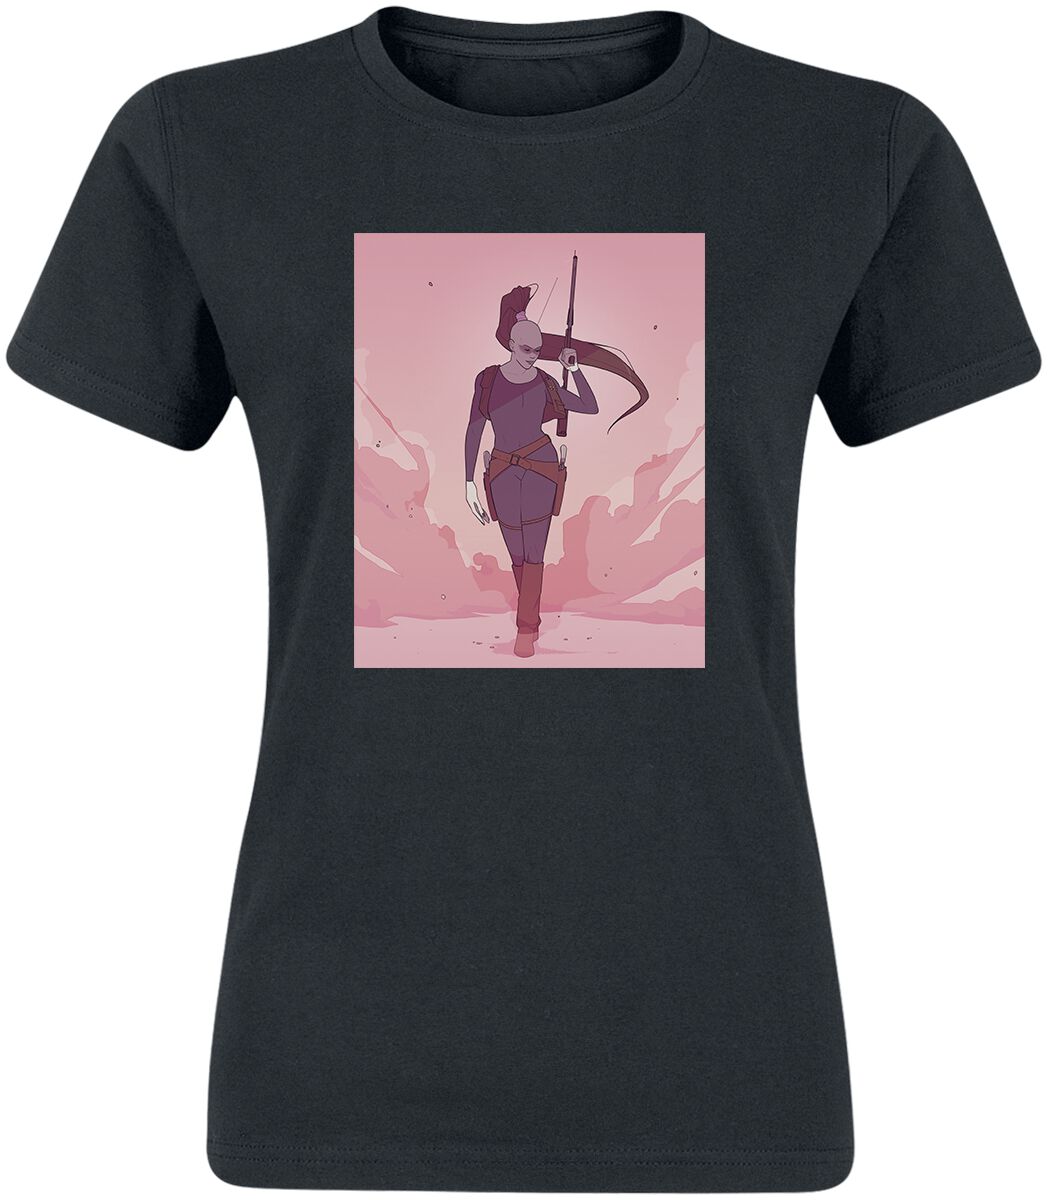 T-Shirt Manches courtes de Star Wars - Ahsoka - Aura Sing - S à XXL - pour Femme - noir